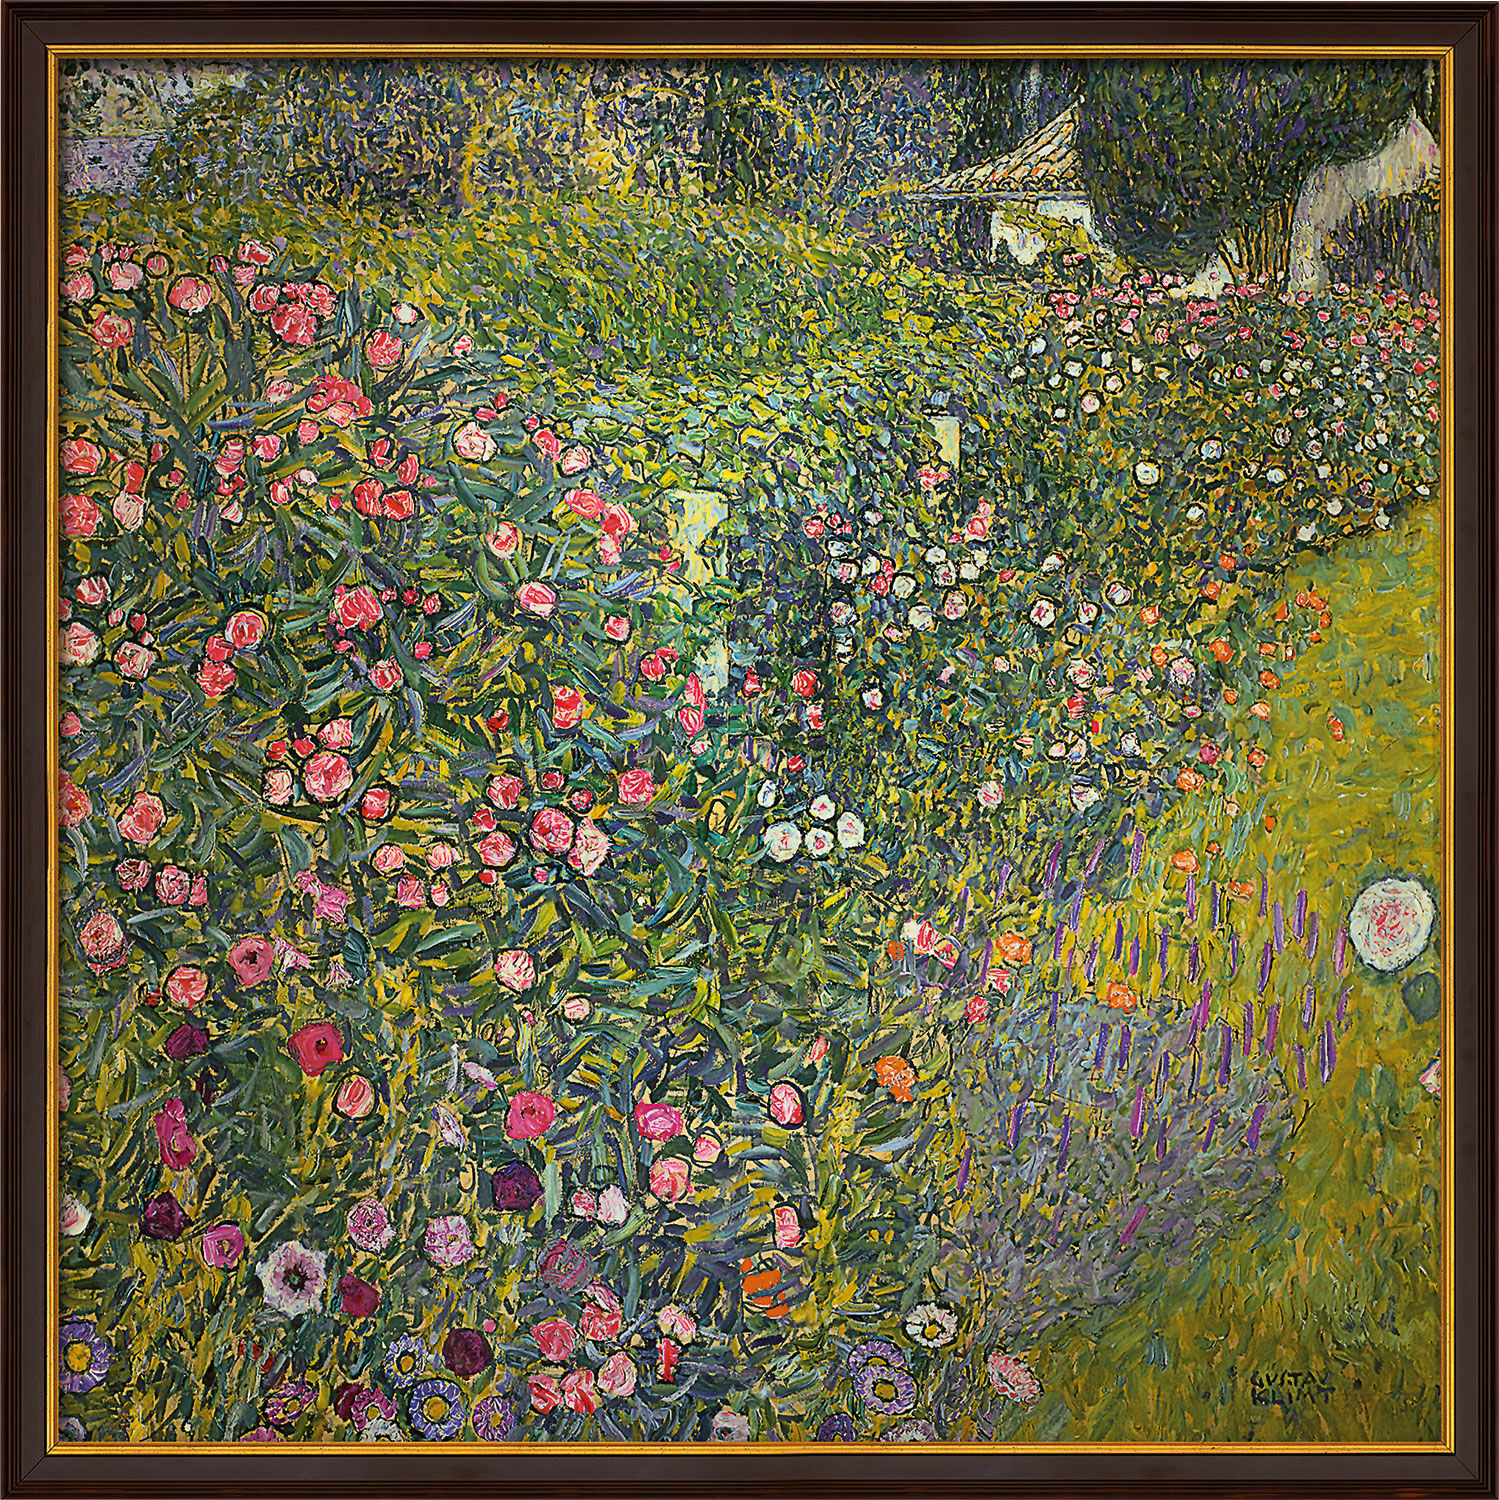 Picture "Italian Garden Landscape" (1913), framed by Gustav Klimt